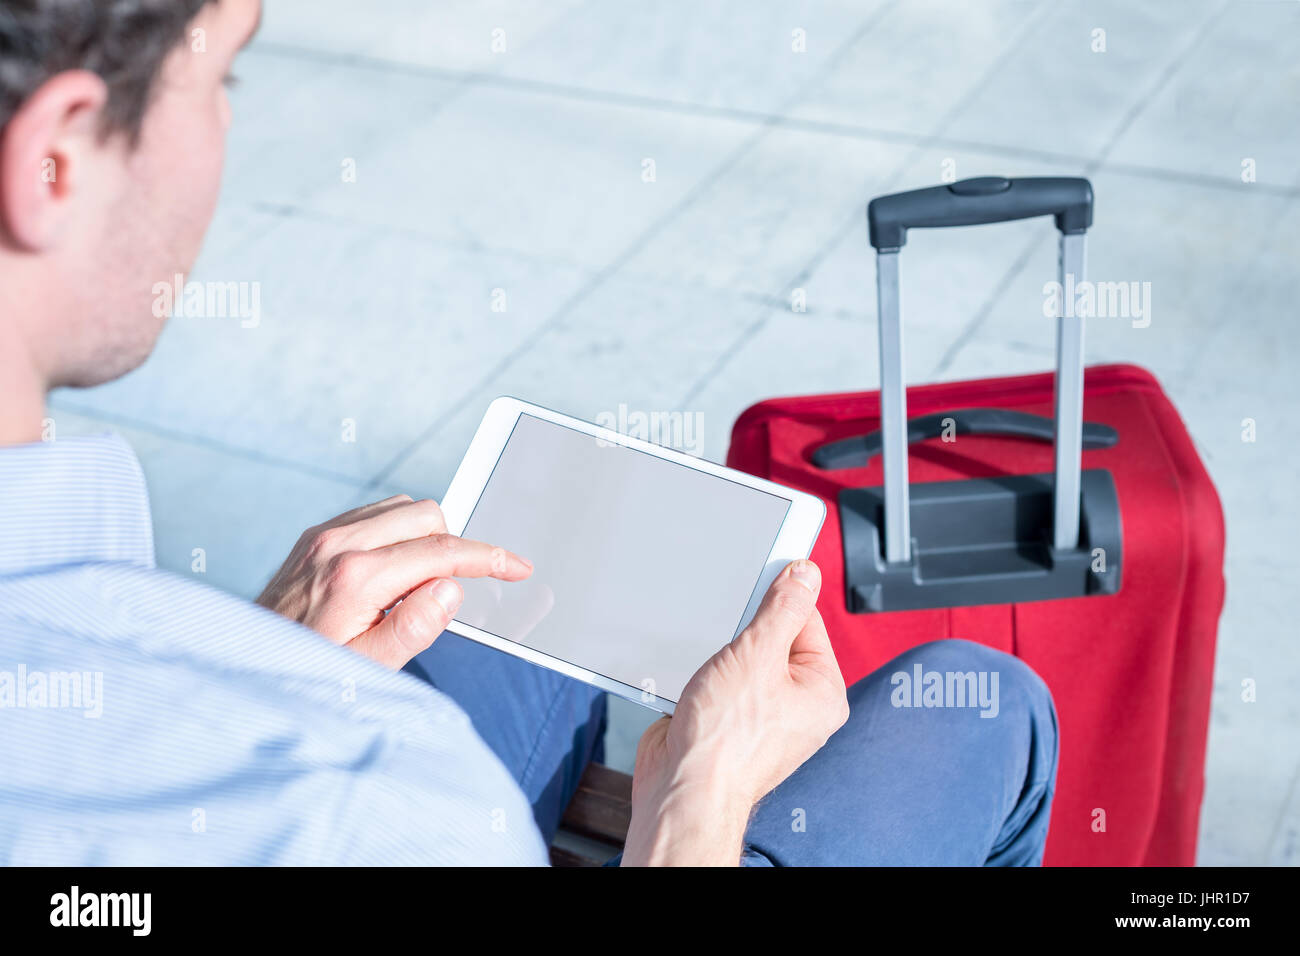 Personne à l'aide d'un ordinateur tablette numérique avec internet, à l'aéroport et montrant l'écran vide, les voyages d'affaires Banque D'Images